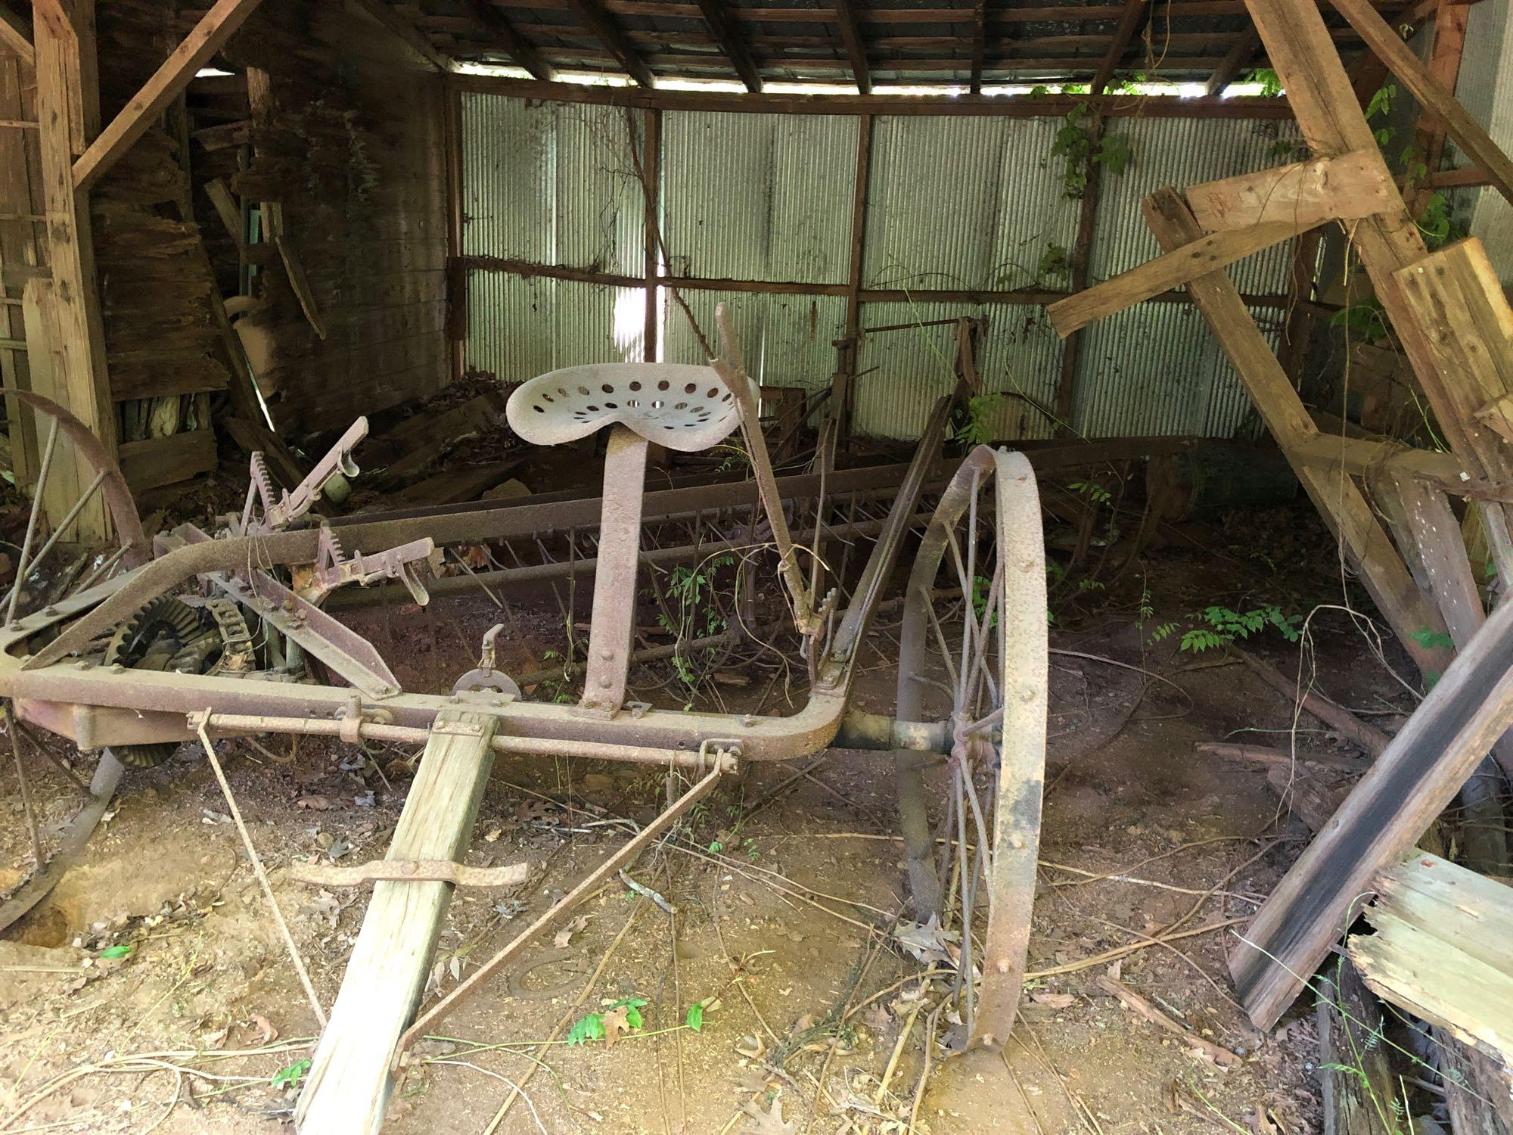 Antique Farm Implements